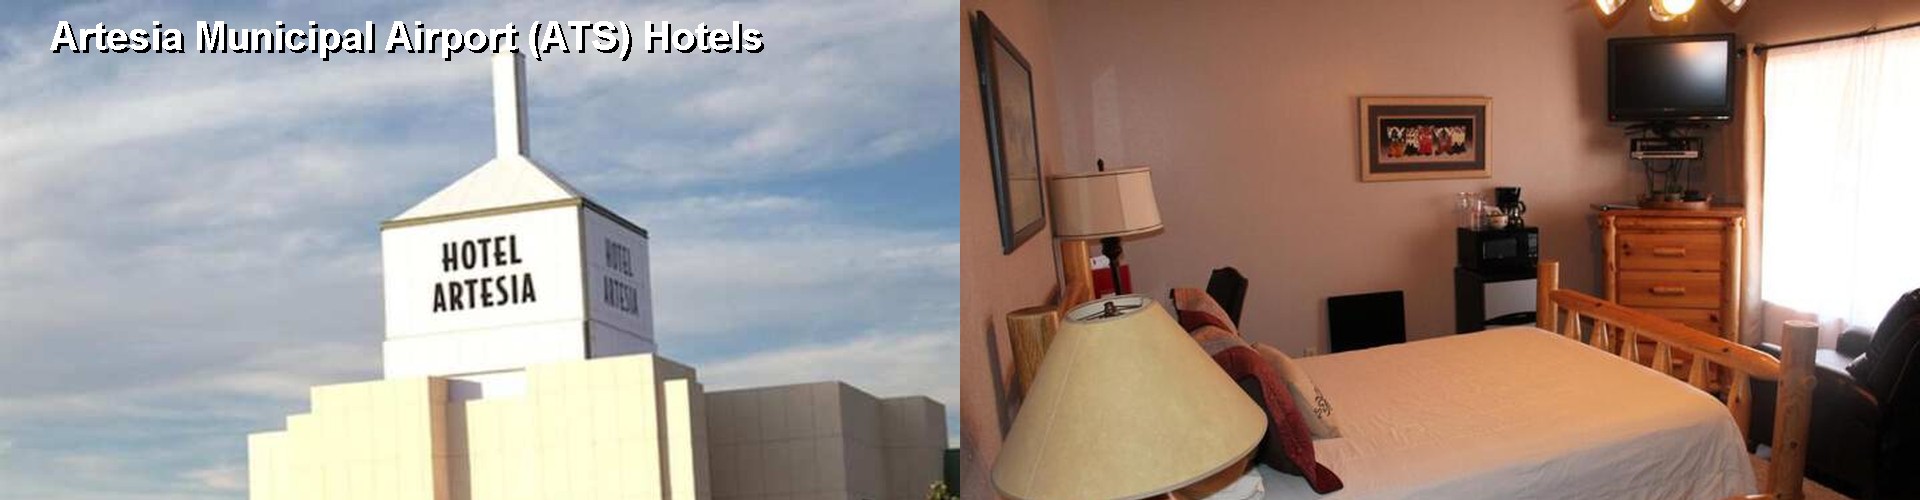 4 Best Hotels near Artesia Municipal Airport (ATS)